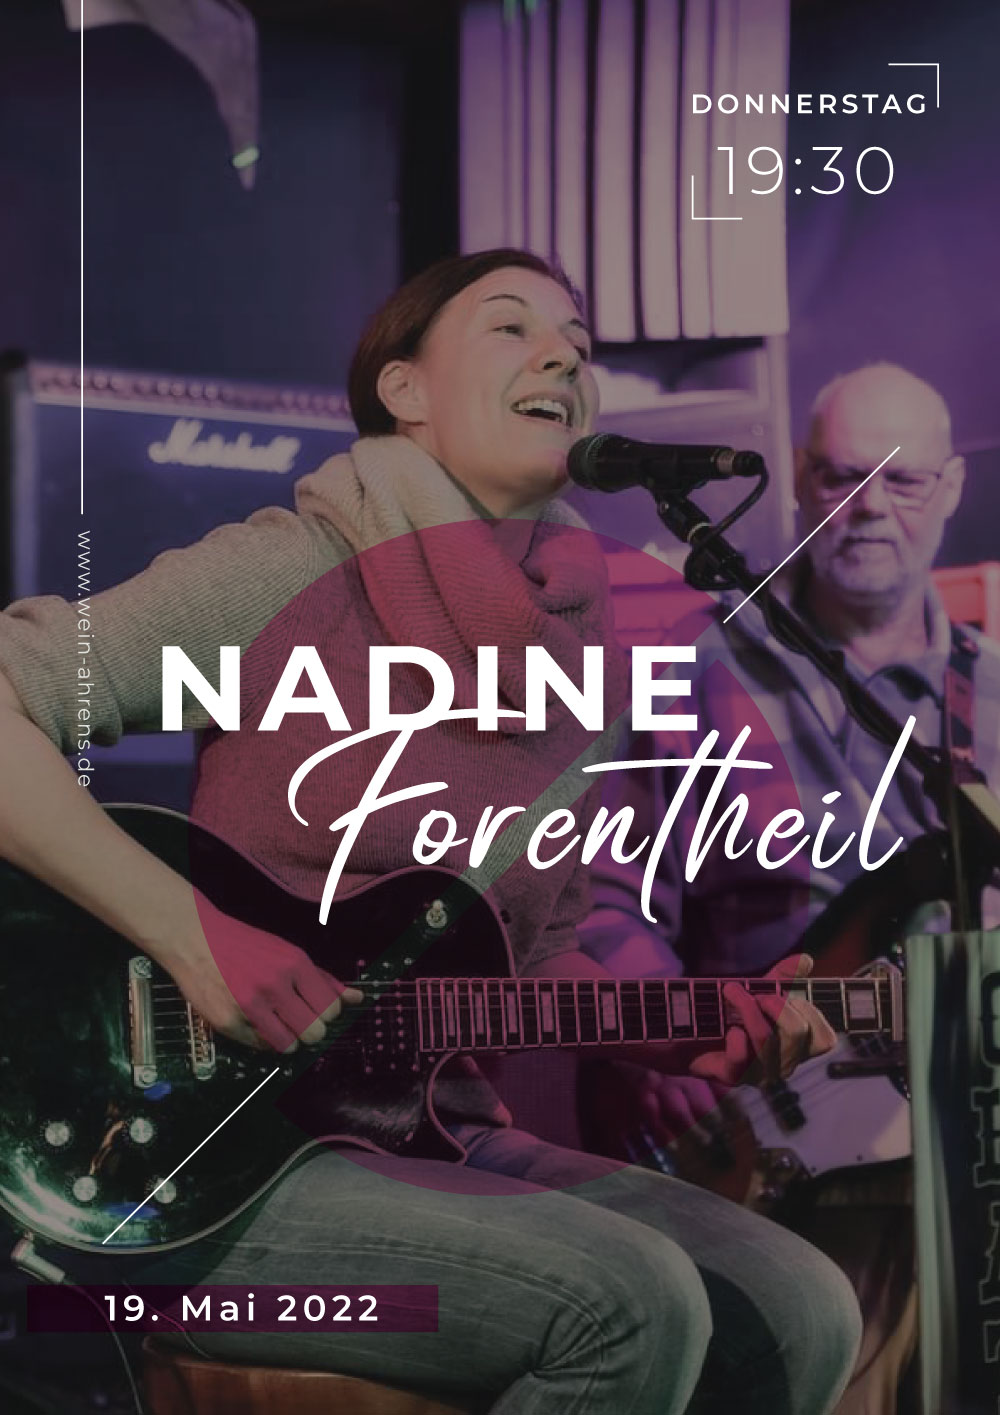 Nadine-Forentheil-live-in-wein-ahrens